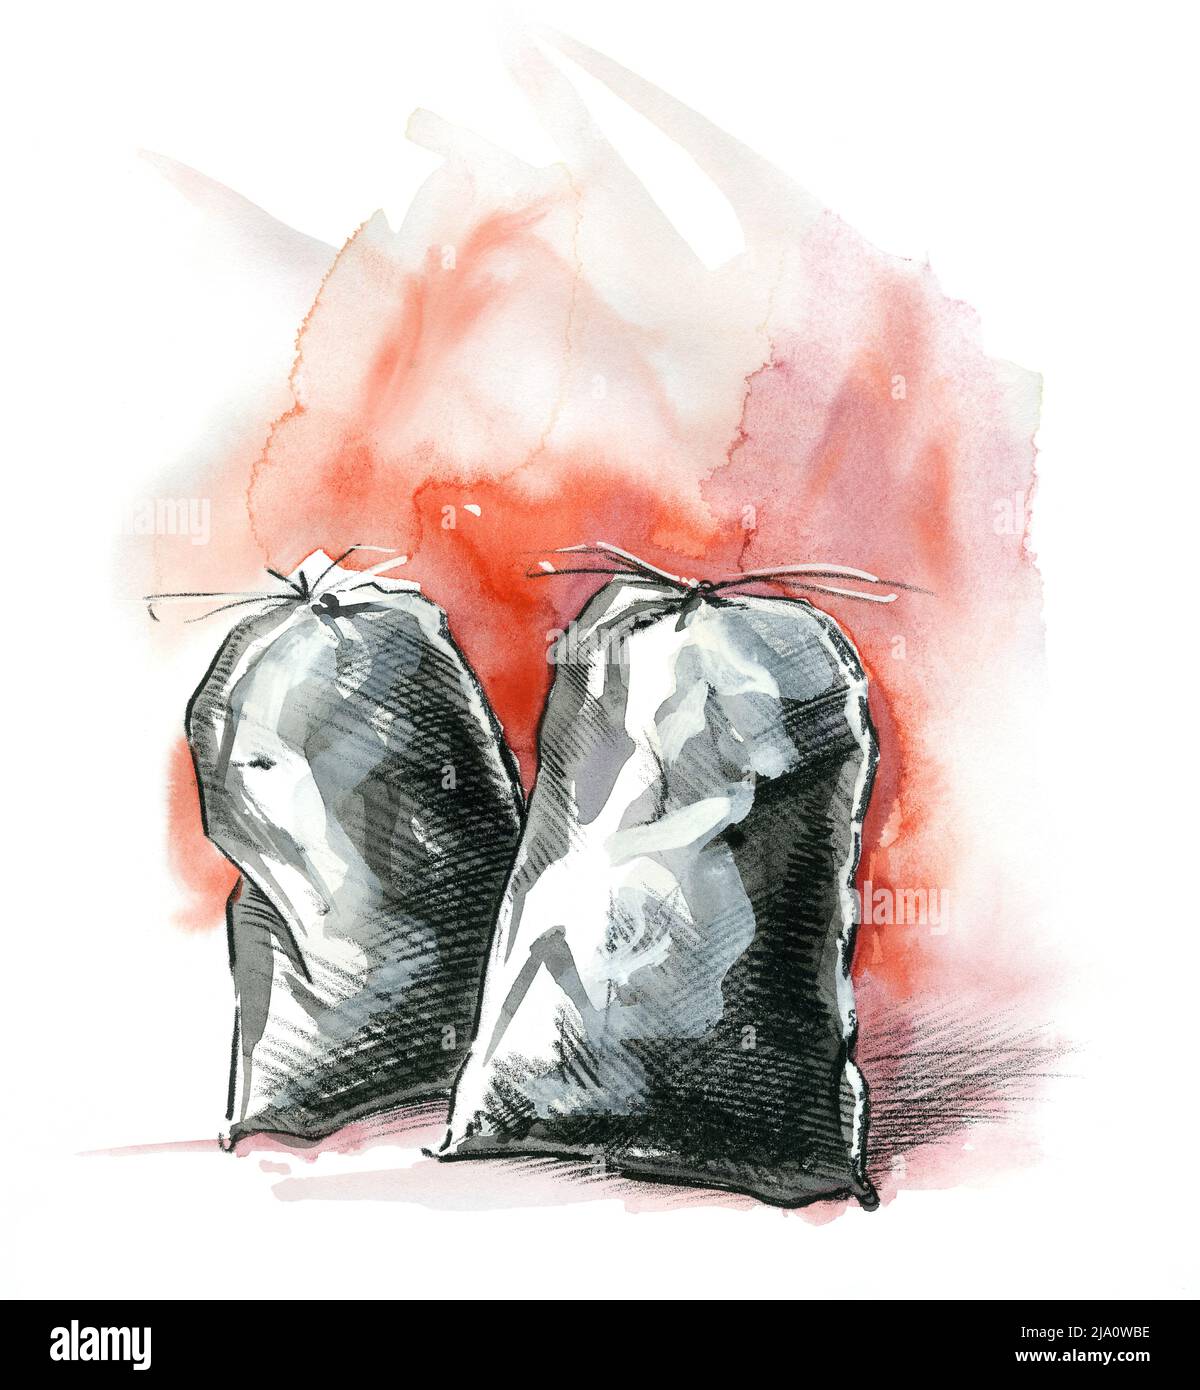 Illustration aquarelle et crayon montrant deux sacs gris dans le dos rouge Banque D'Images